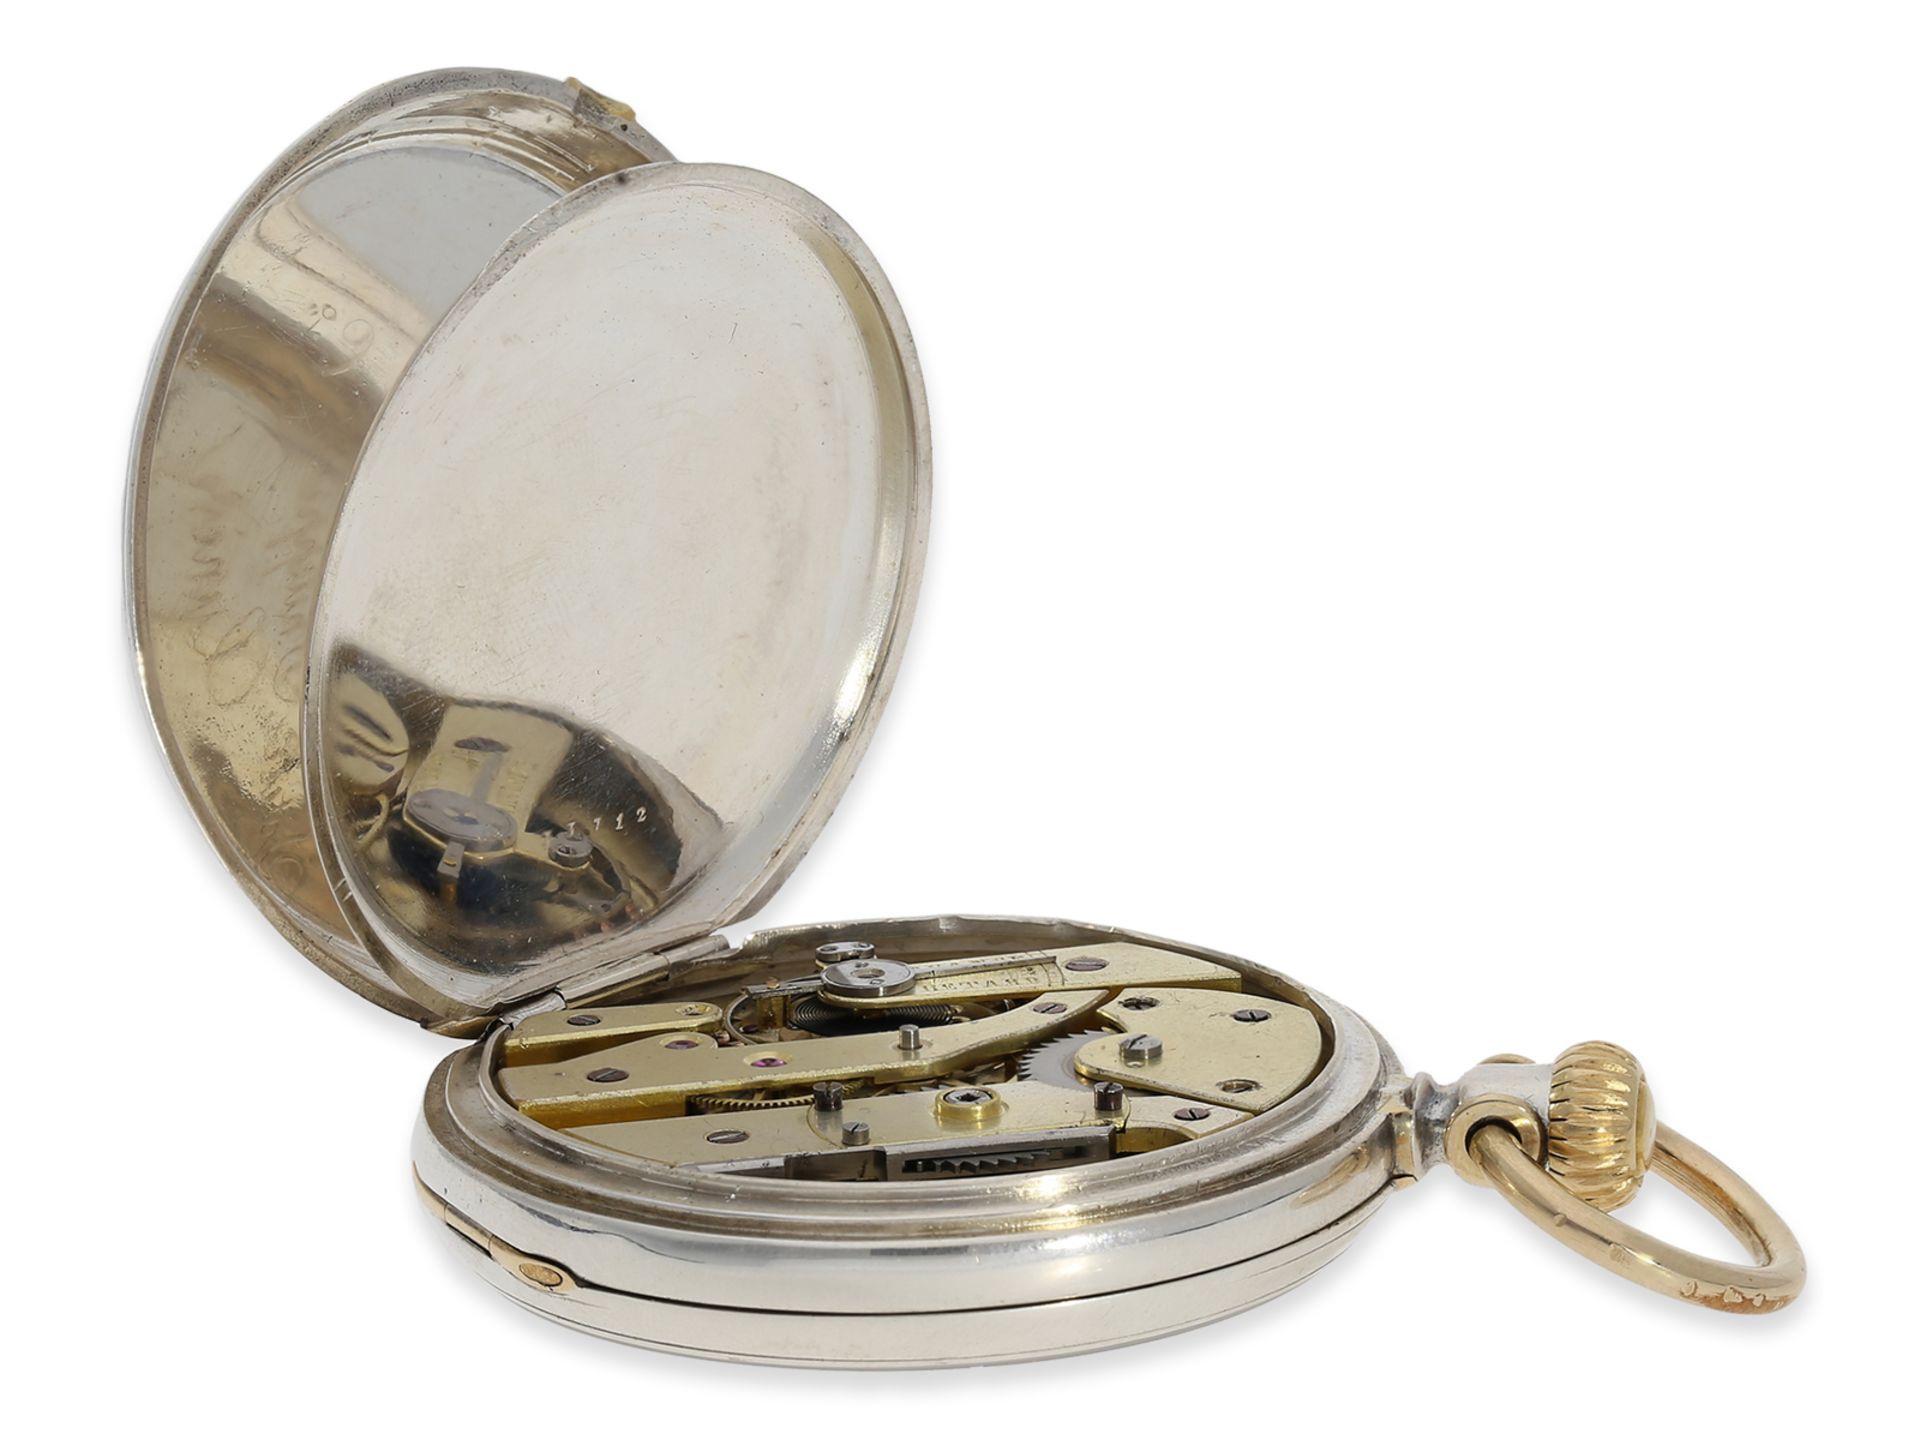 Taschenuhr: frühe, einzigartige Patek Philippe Taschenuhr, Ankerchronometer mit frühem Kronenaufzug  - Bild 3 aus 5